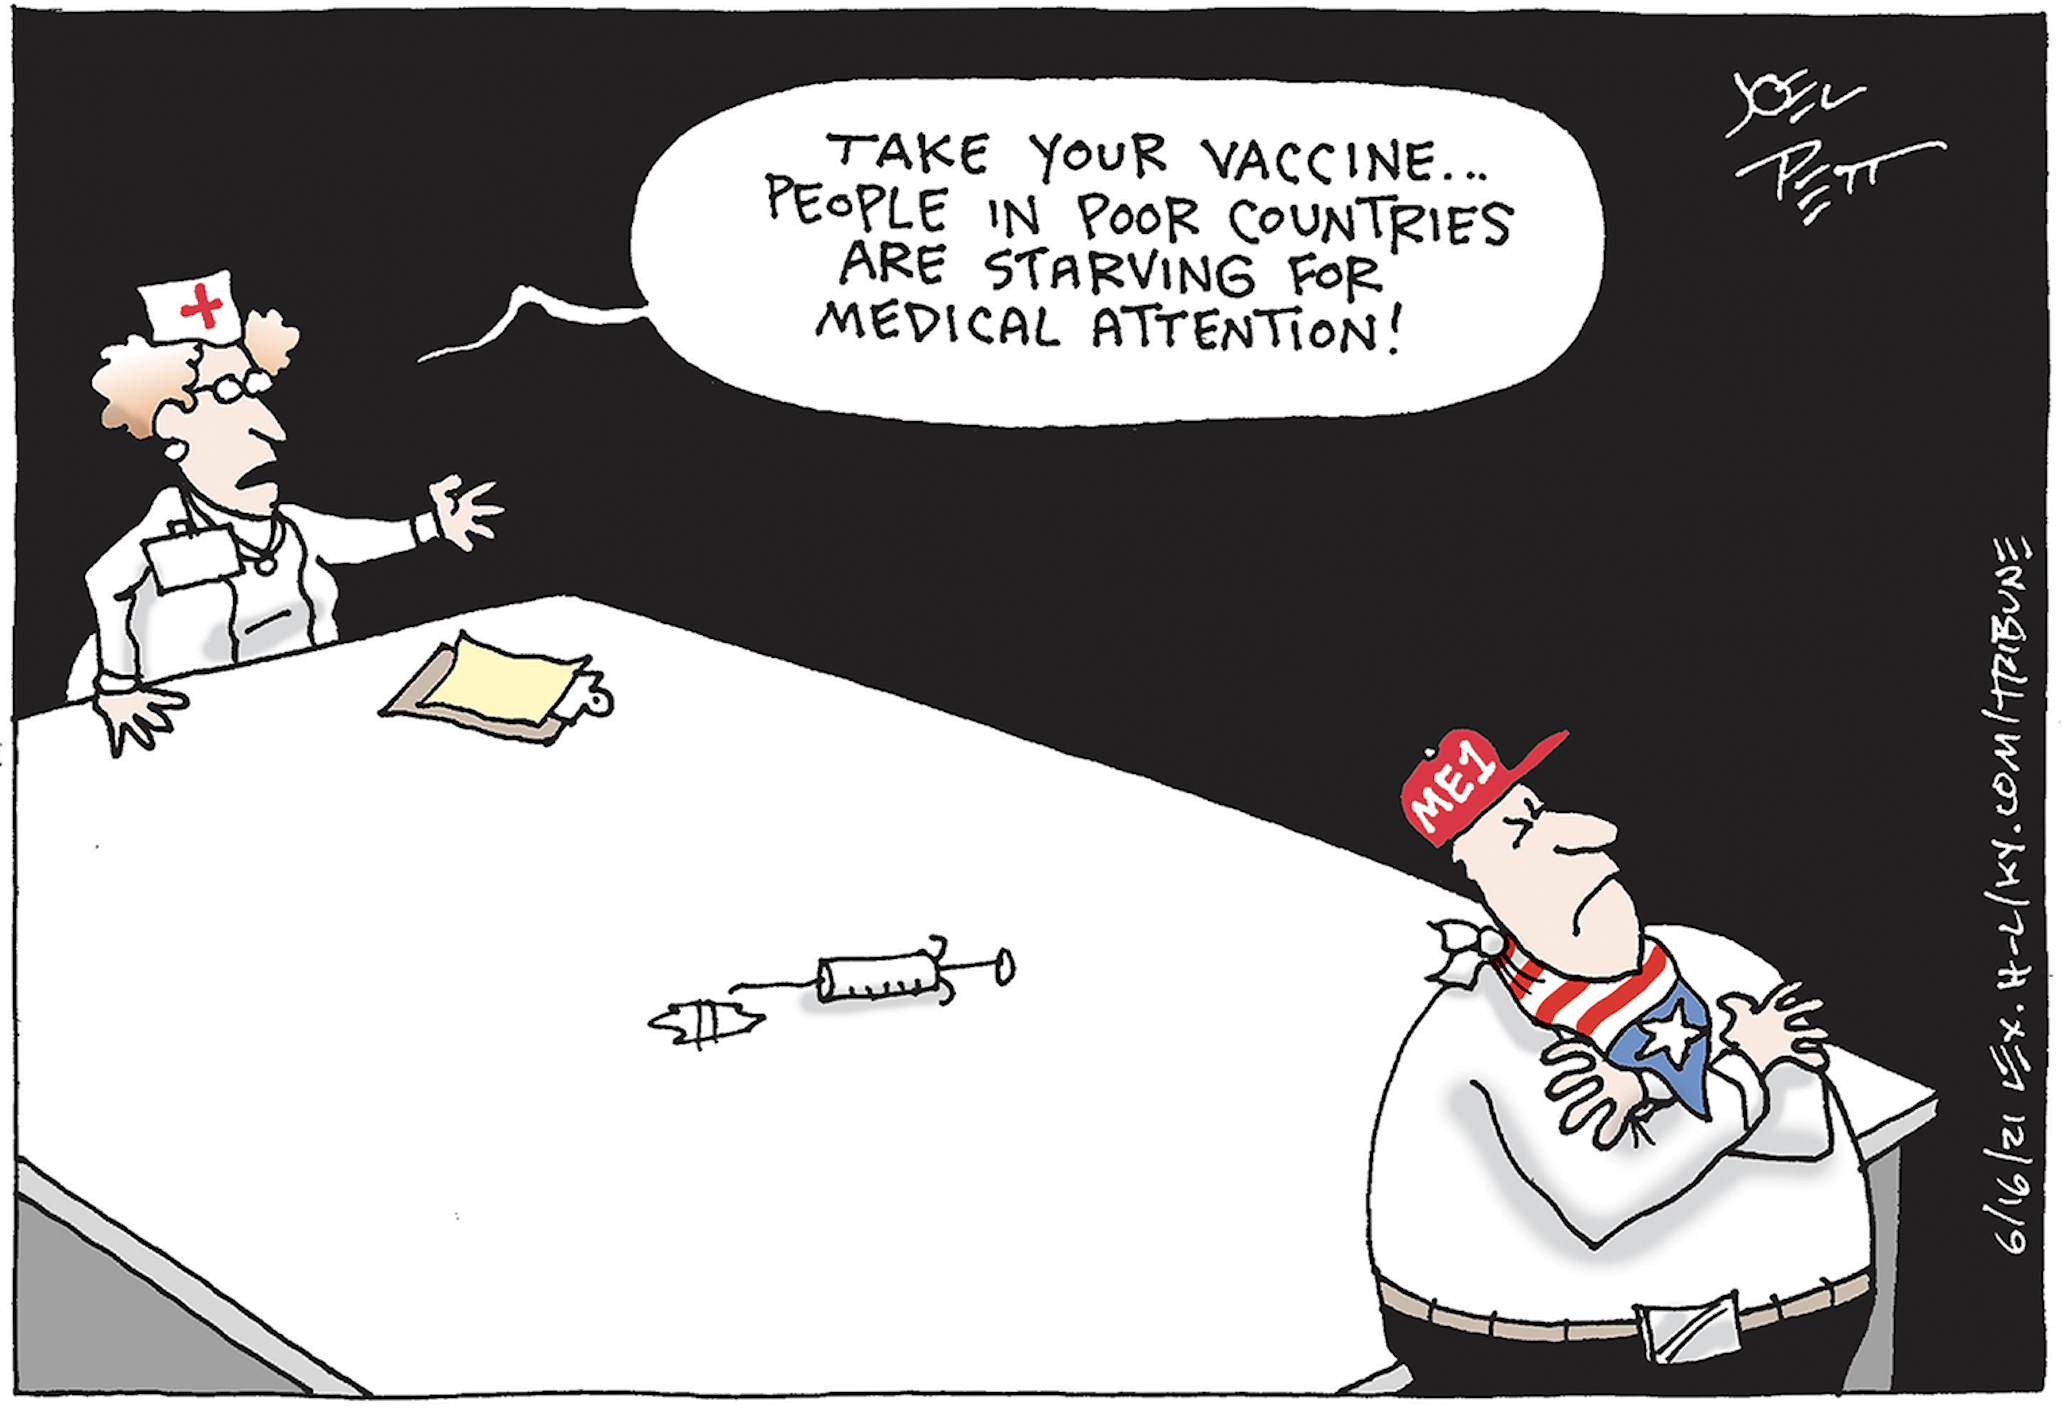 Anti-vaxxers